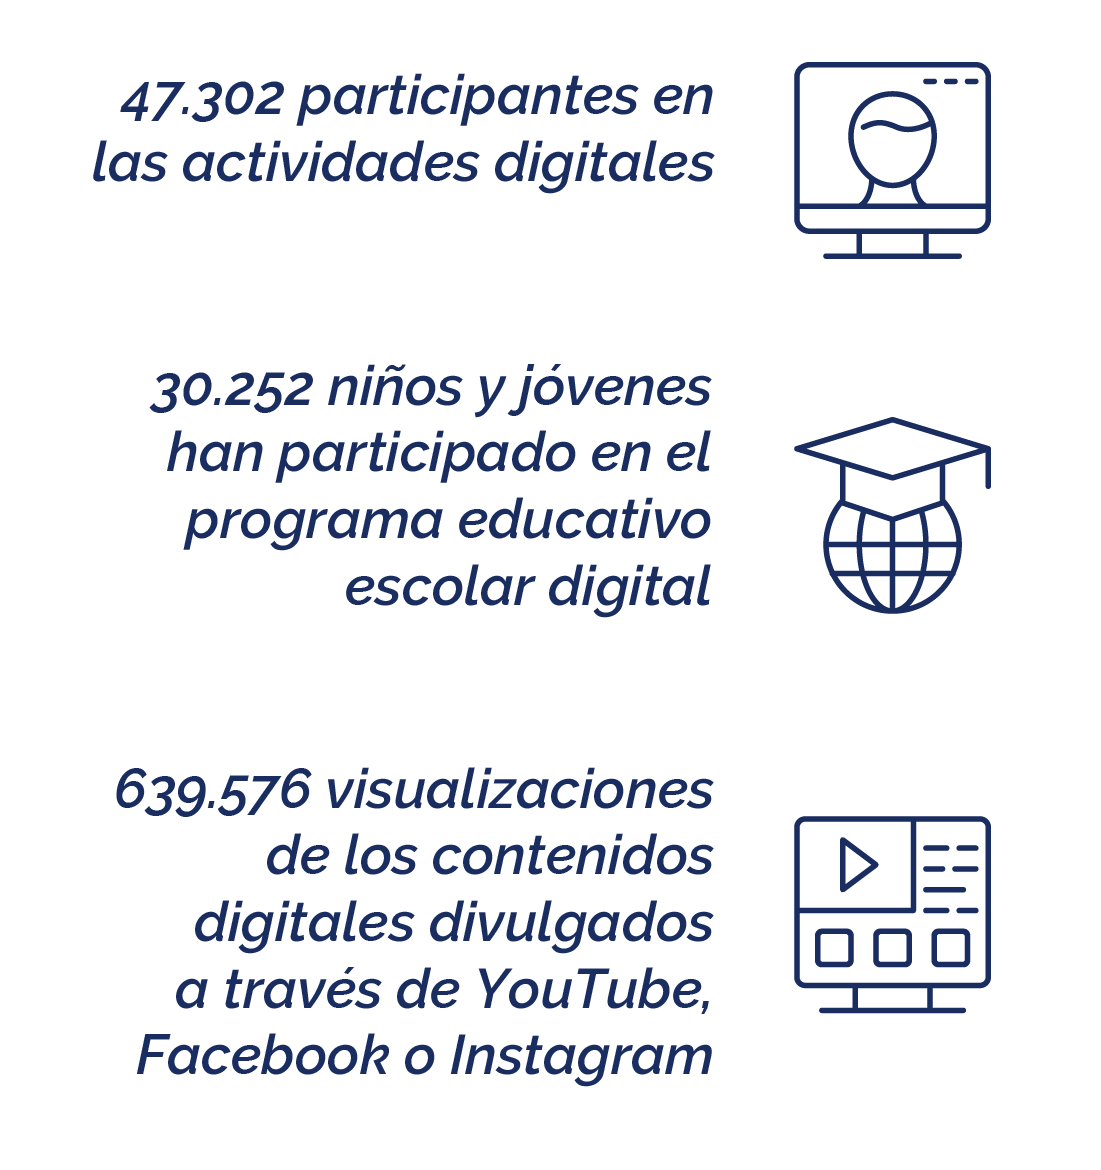 2021: 47.302 participantes en las actividades digitales, 30.252 niños y jóvenes han participado en el programa educativo escolar digital y 639.576 visualizaciones de los contenidos digitales divulgados a través de las redes sociales.